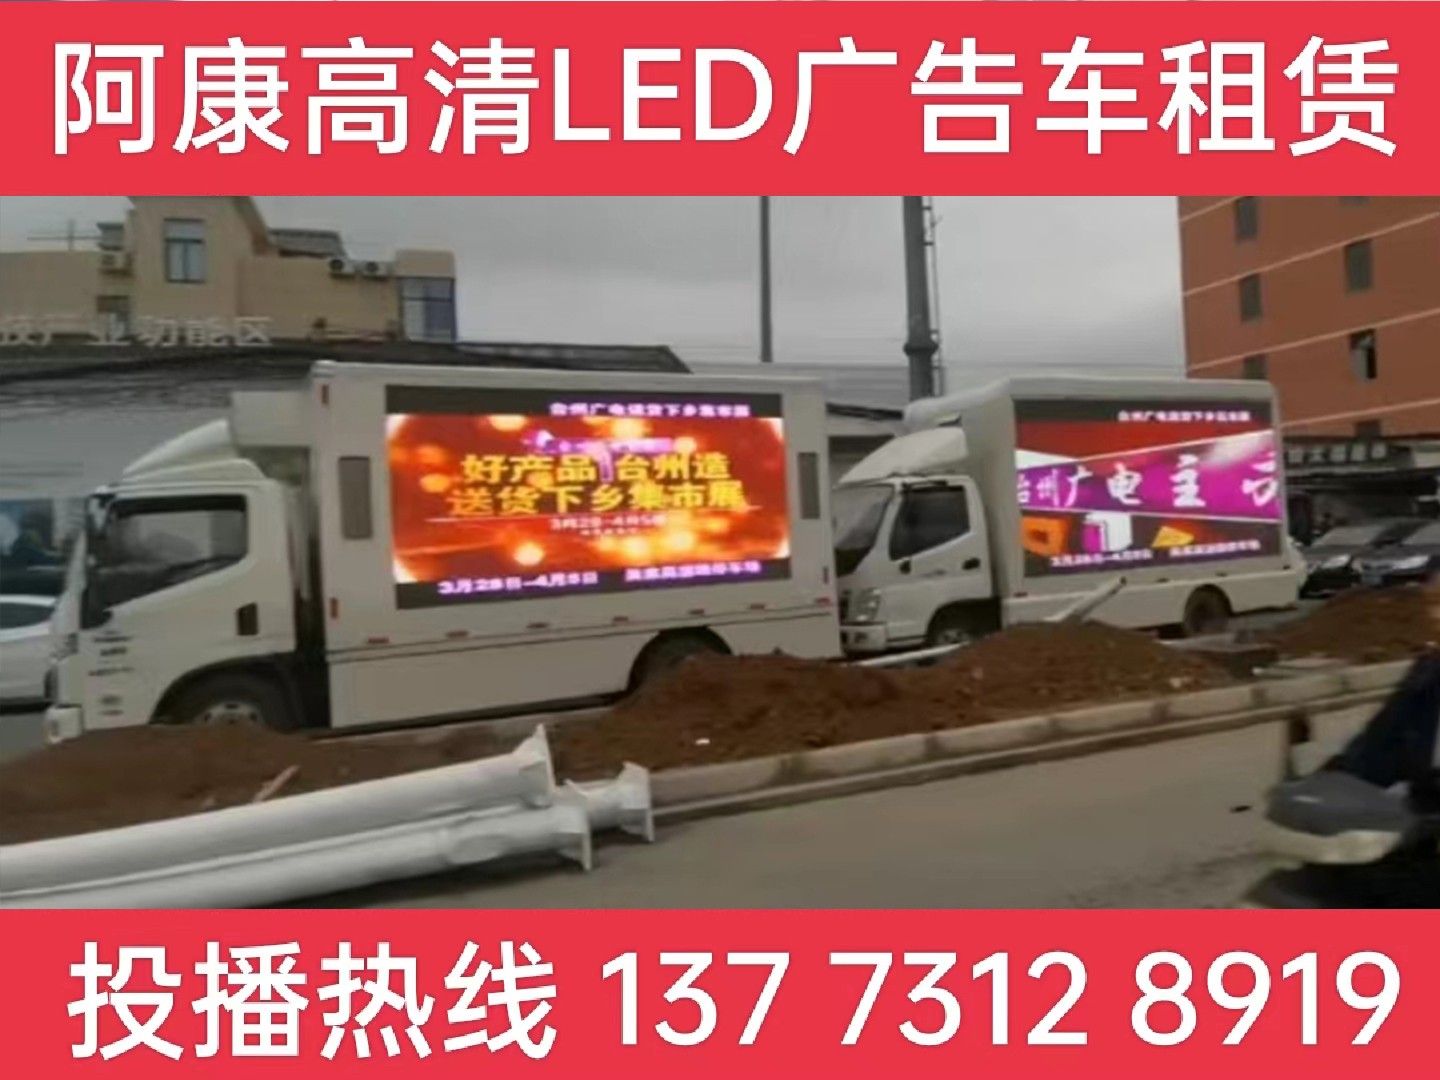 高港区LED宣传车租赁